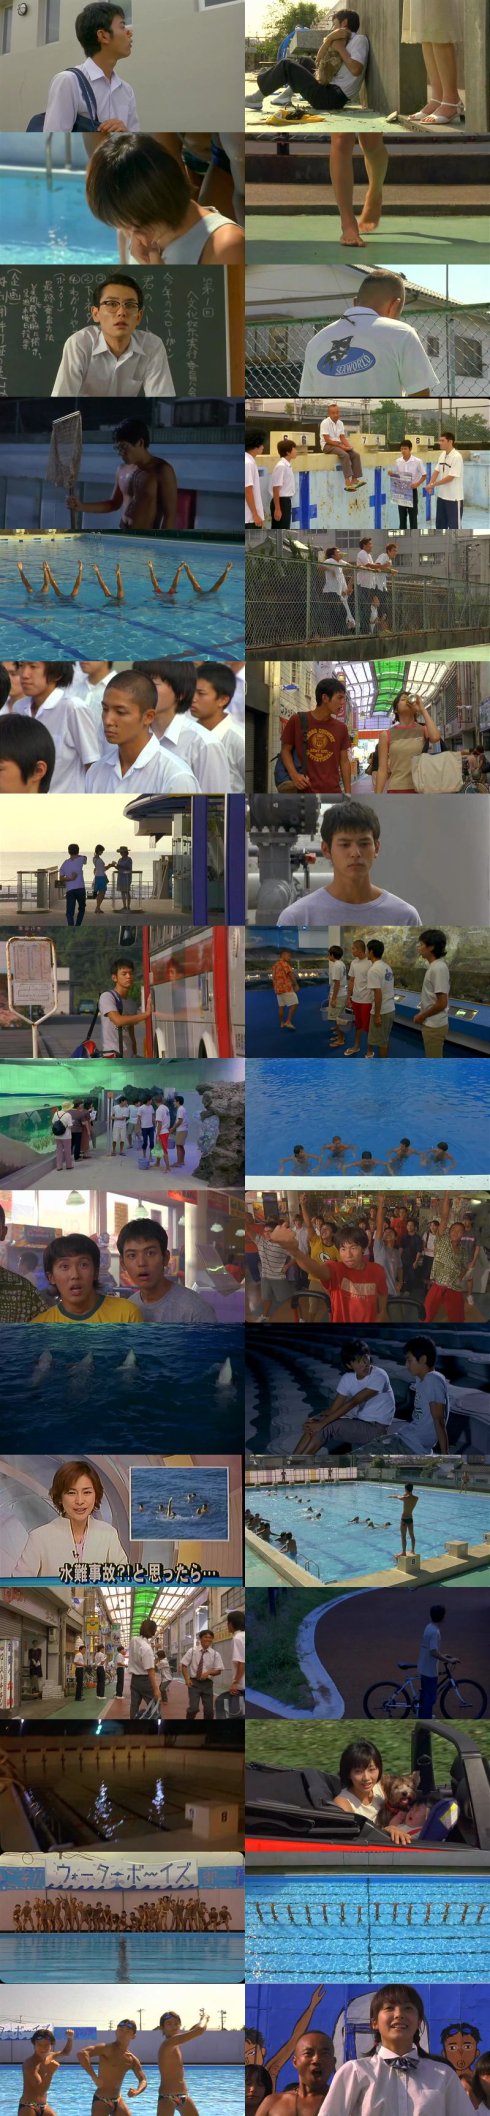 [五个扑水的少年]Waterboys.2001 - 第1张  | 第五维